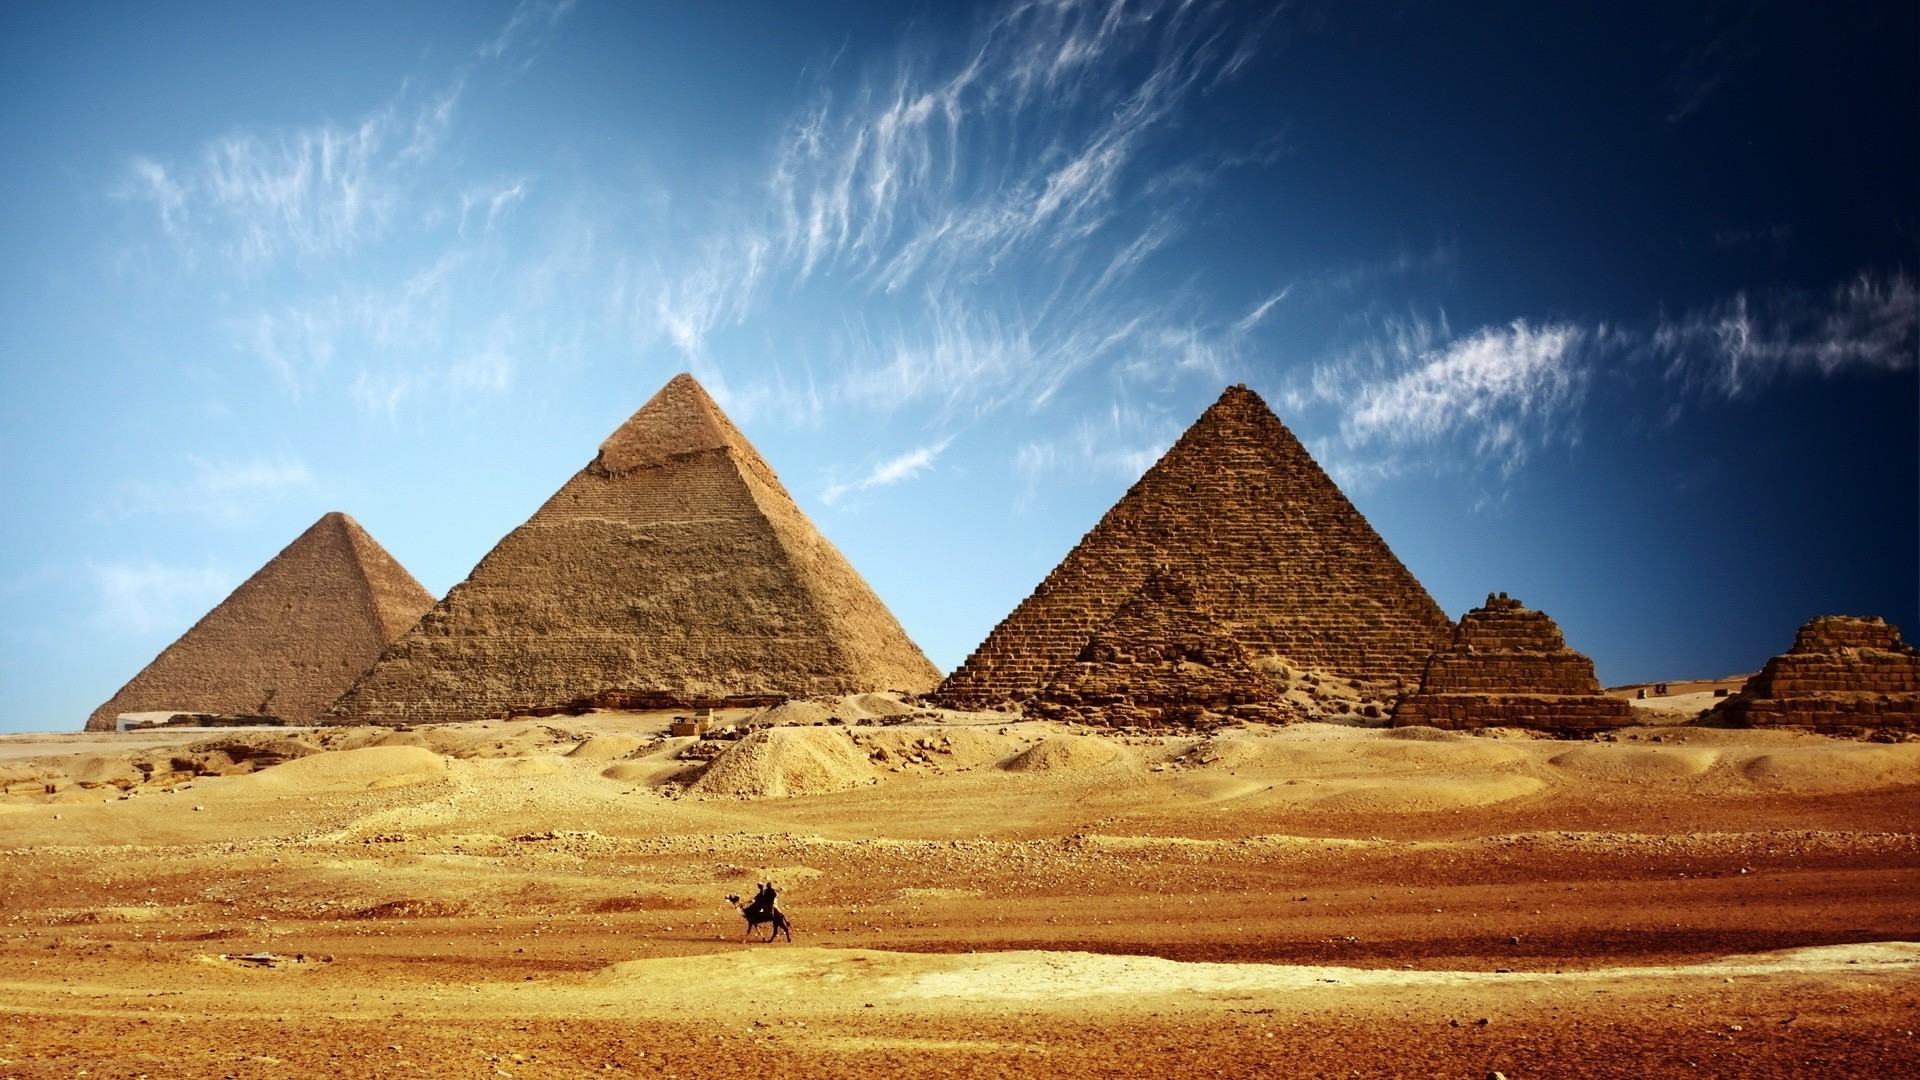 знаменитые места пирамида пустыня путешествия могила археология песок фараон верблюд небо древние на открытом воздухе сухой сфинкс горячая солнце туризм